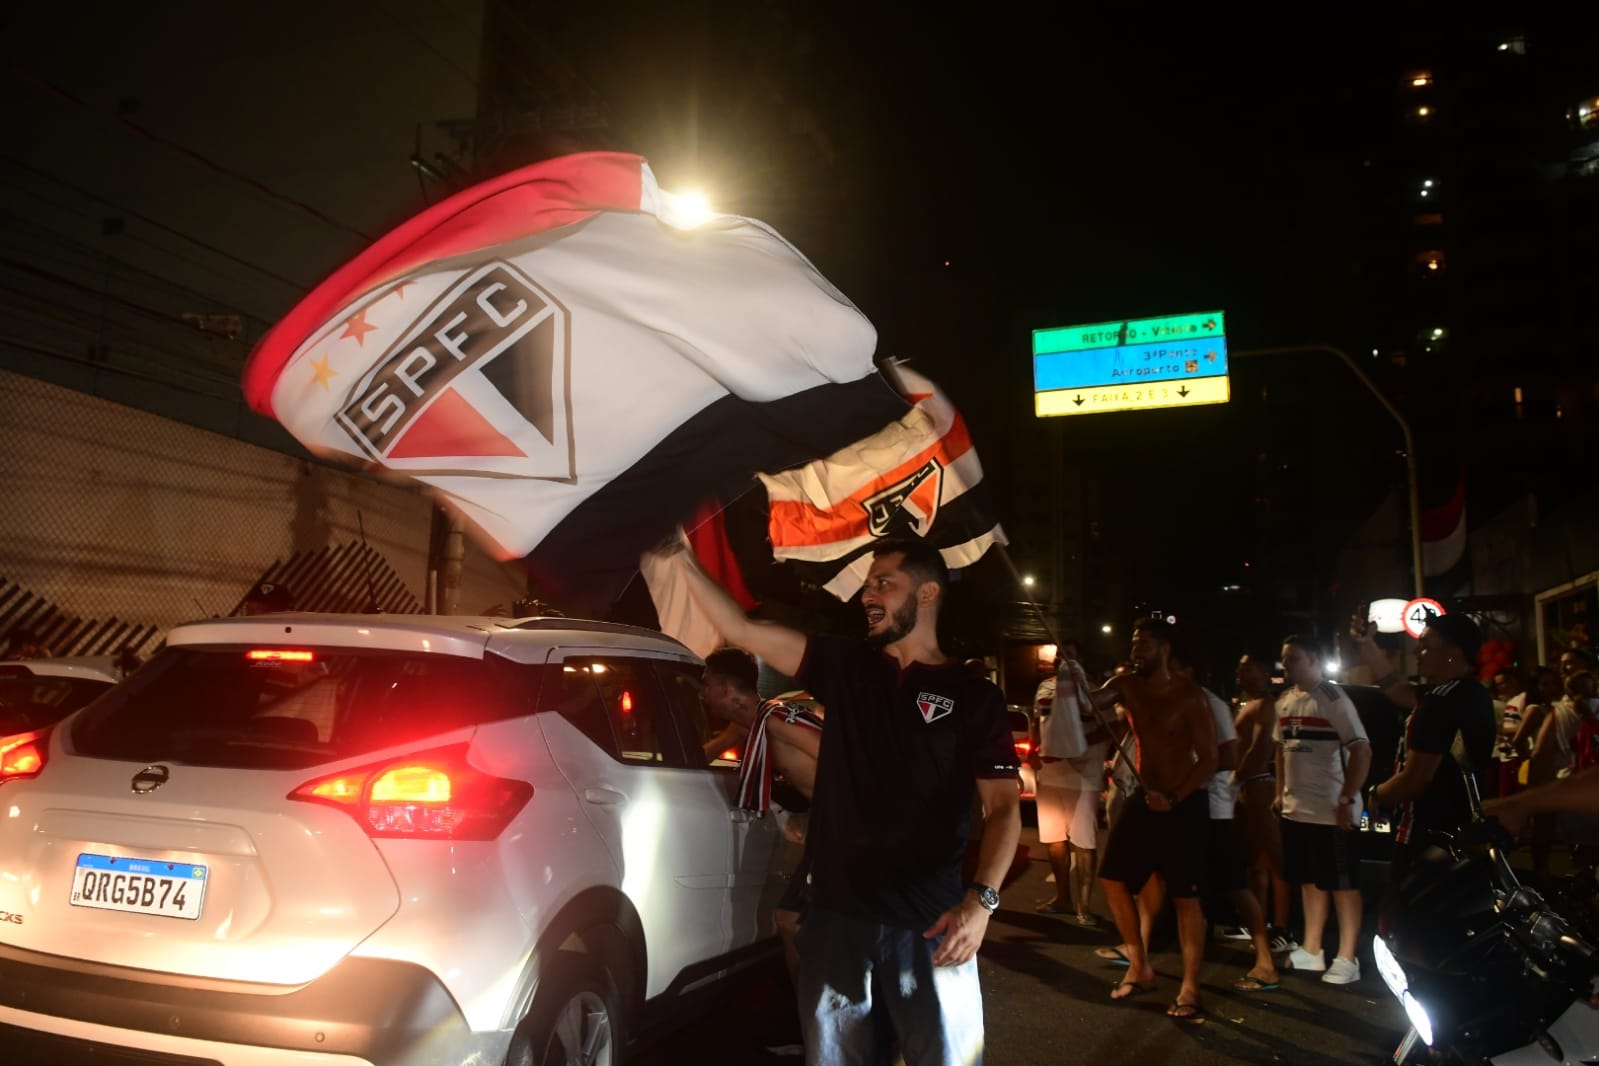 Tricolores tomaram conta da Avenida Hugo Musso, em Vila Velha, e fizeram a festa após a conquista inédita sobre o Flamengo